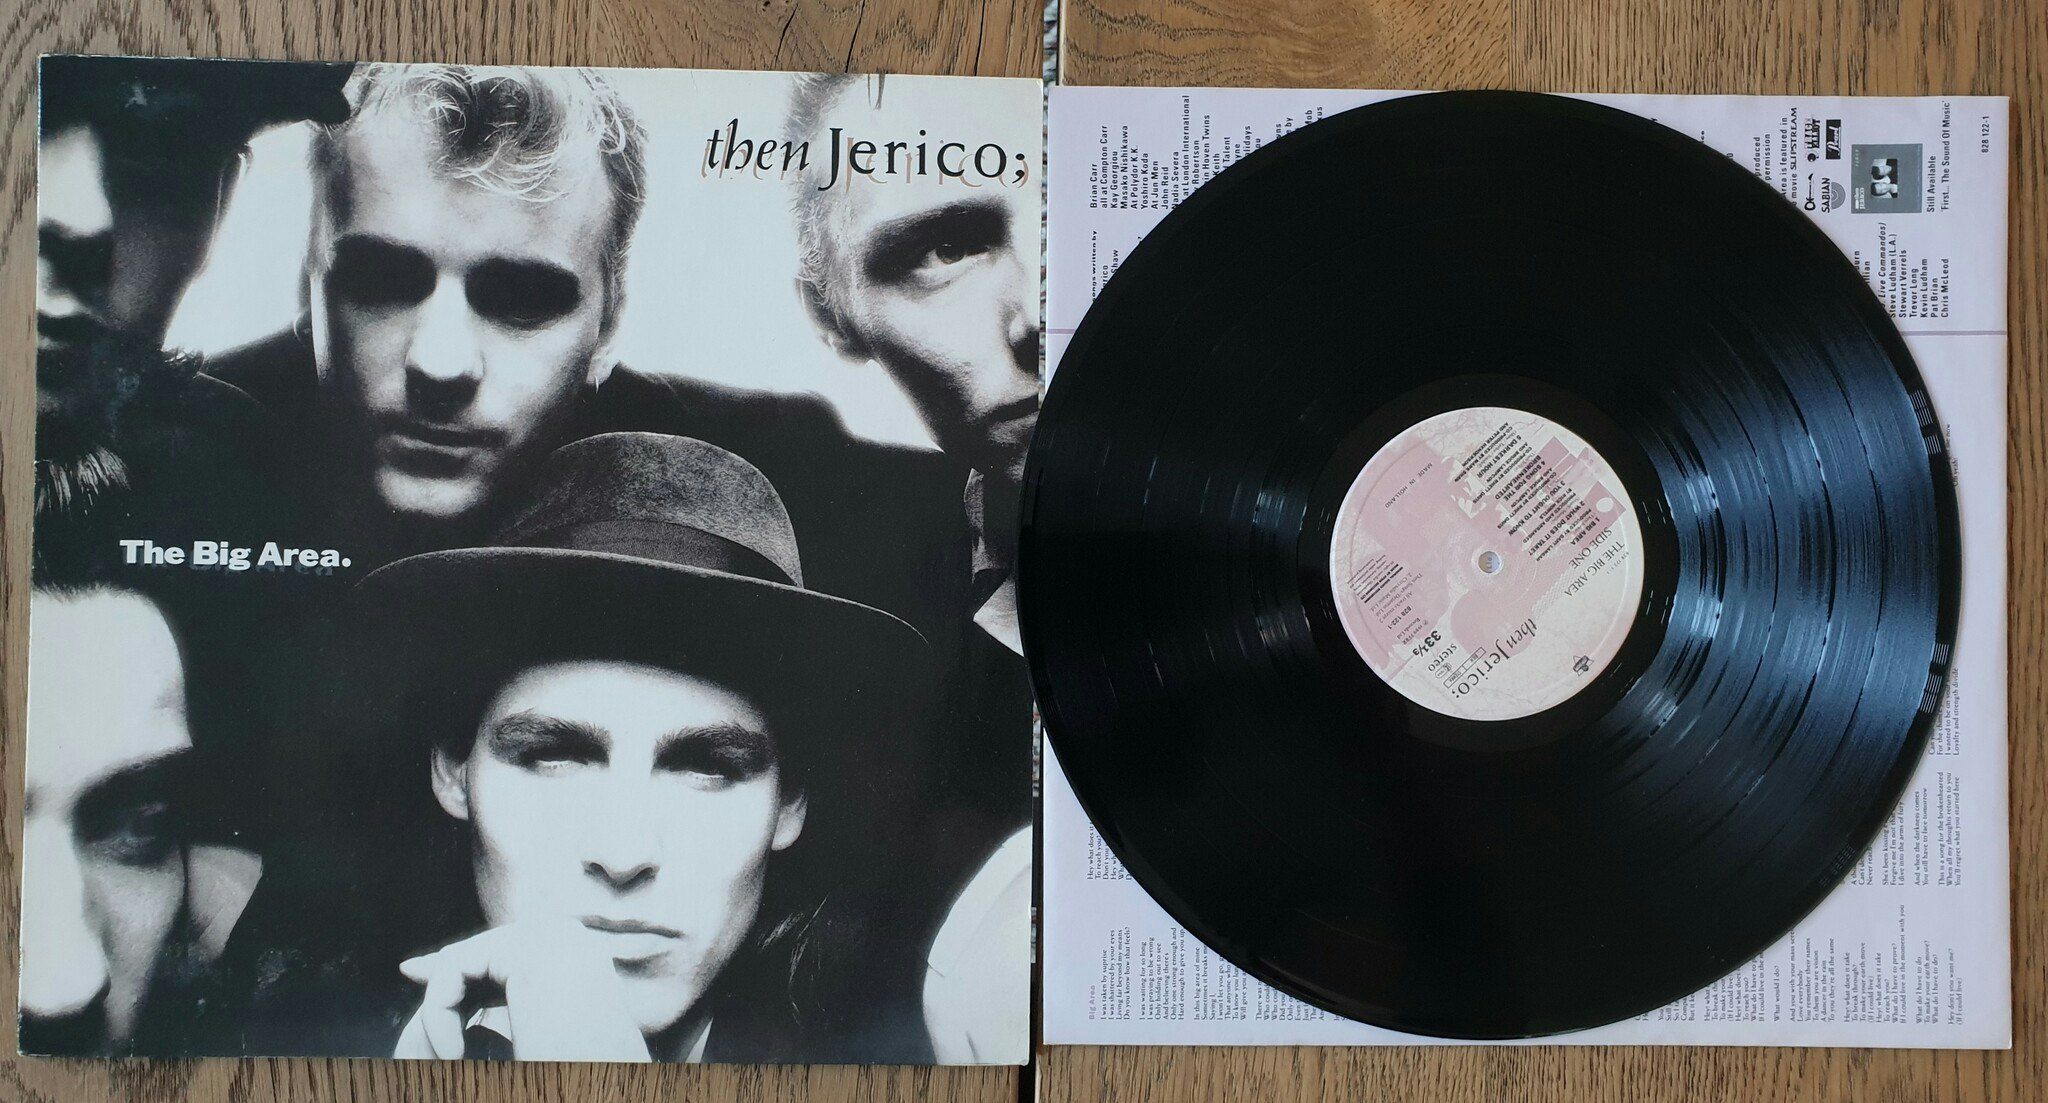 then Jerico, The Big Area. Vinyl LP